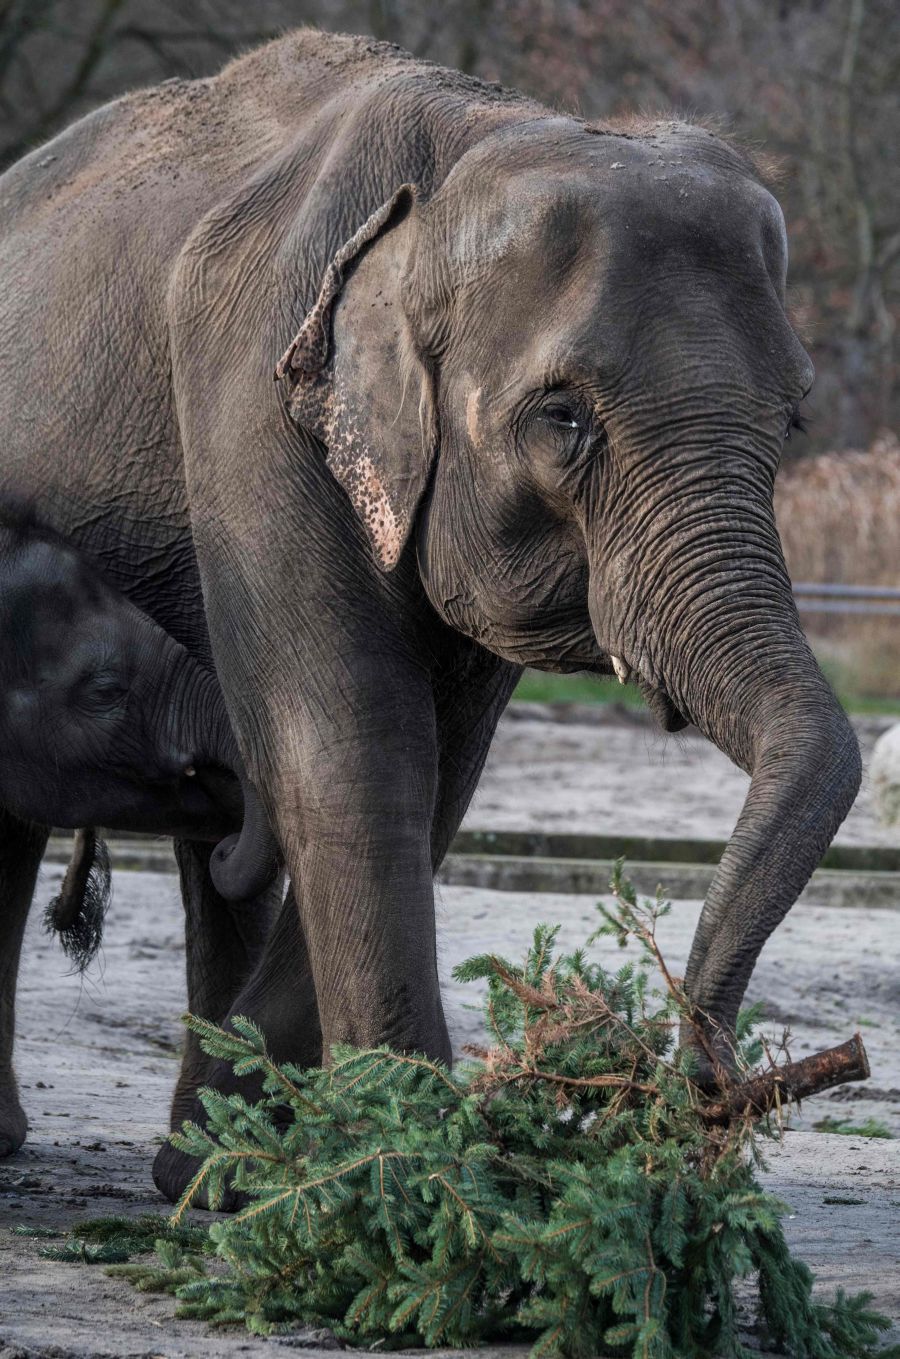 Los árboles de Navidad son aprovechados como comida para animales. Es el caso del zoo de Berlín, que ha facilitado estas preciosas imágenes de sus elefantes jugando y comiendo estos árboles que hace poco decoraban los hogares de los berlineses.